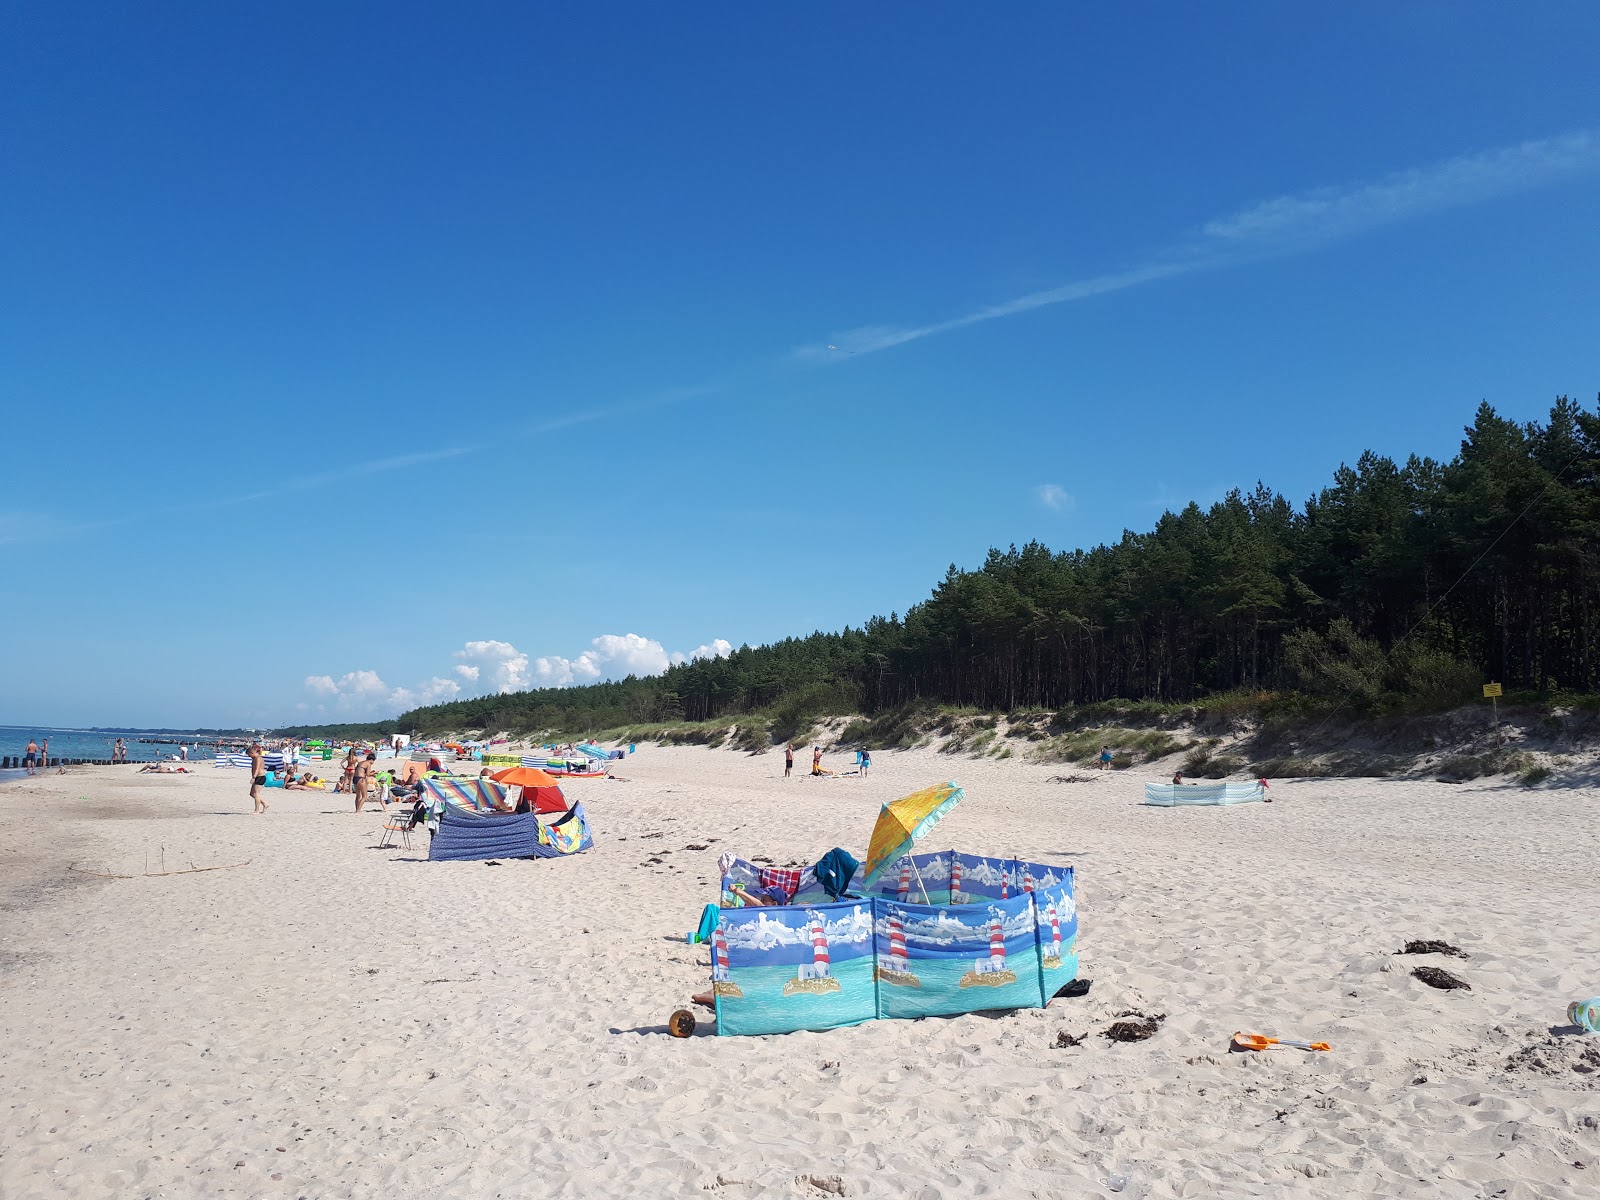 Fotografie cu Mielenko beach cu nivelul de curățenie înalt